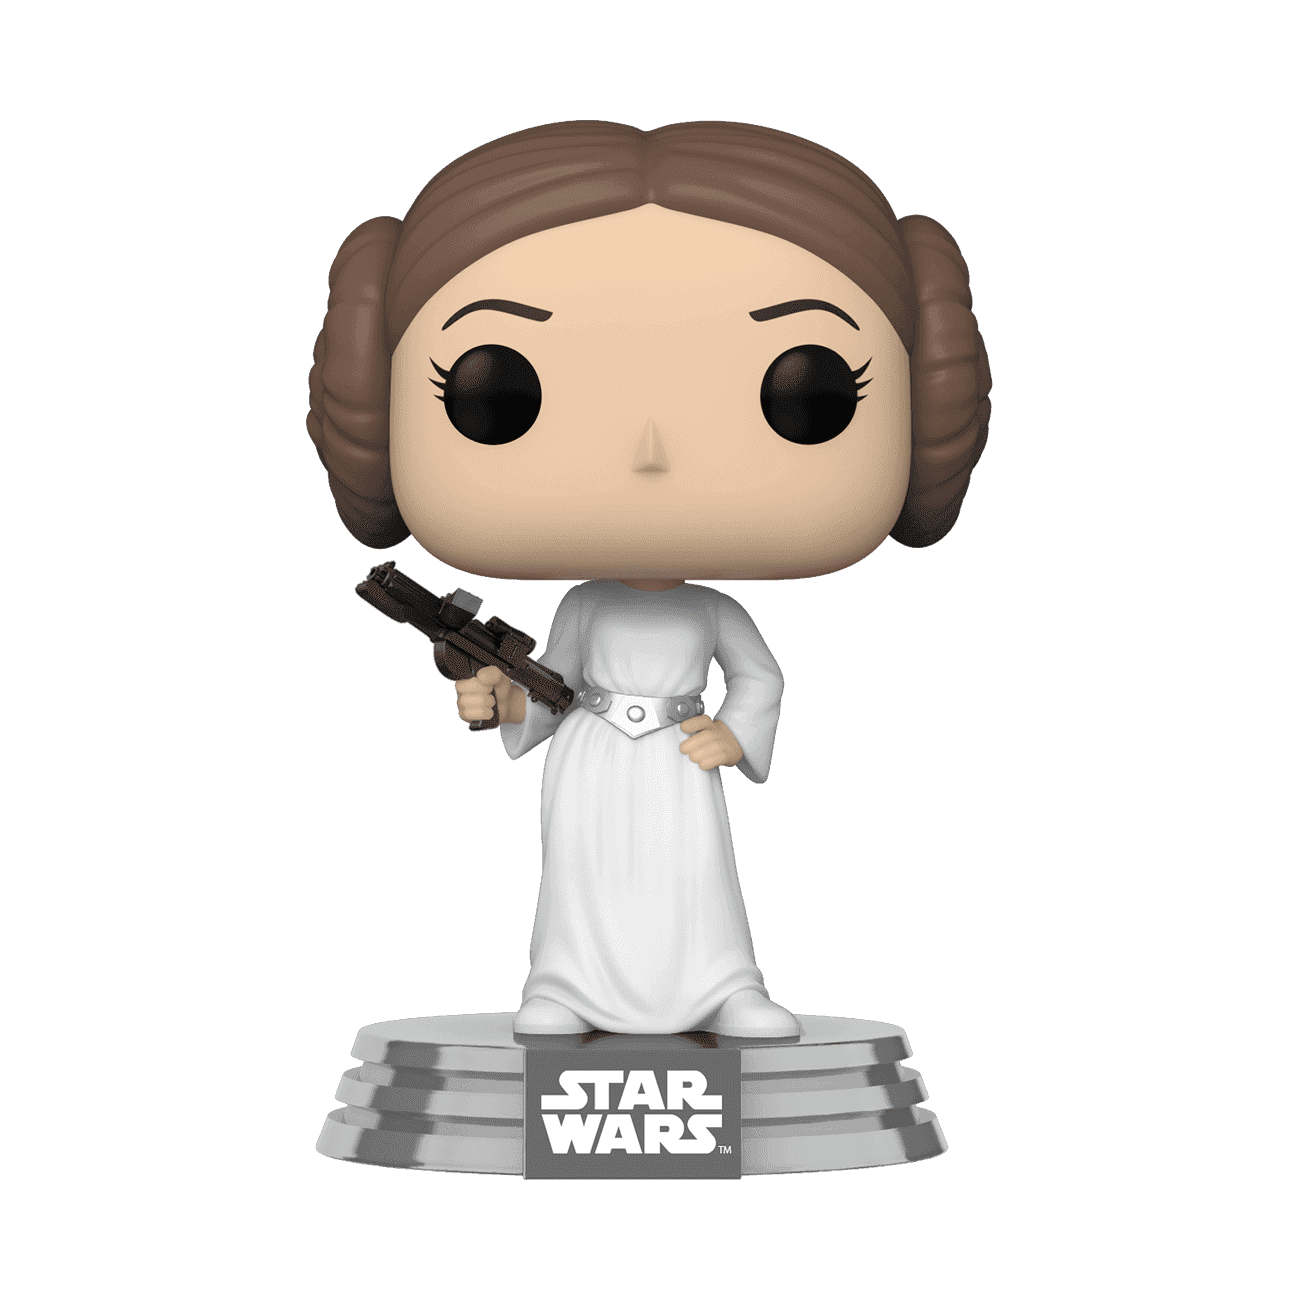 image de Princess Leia